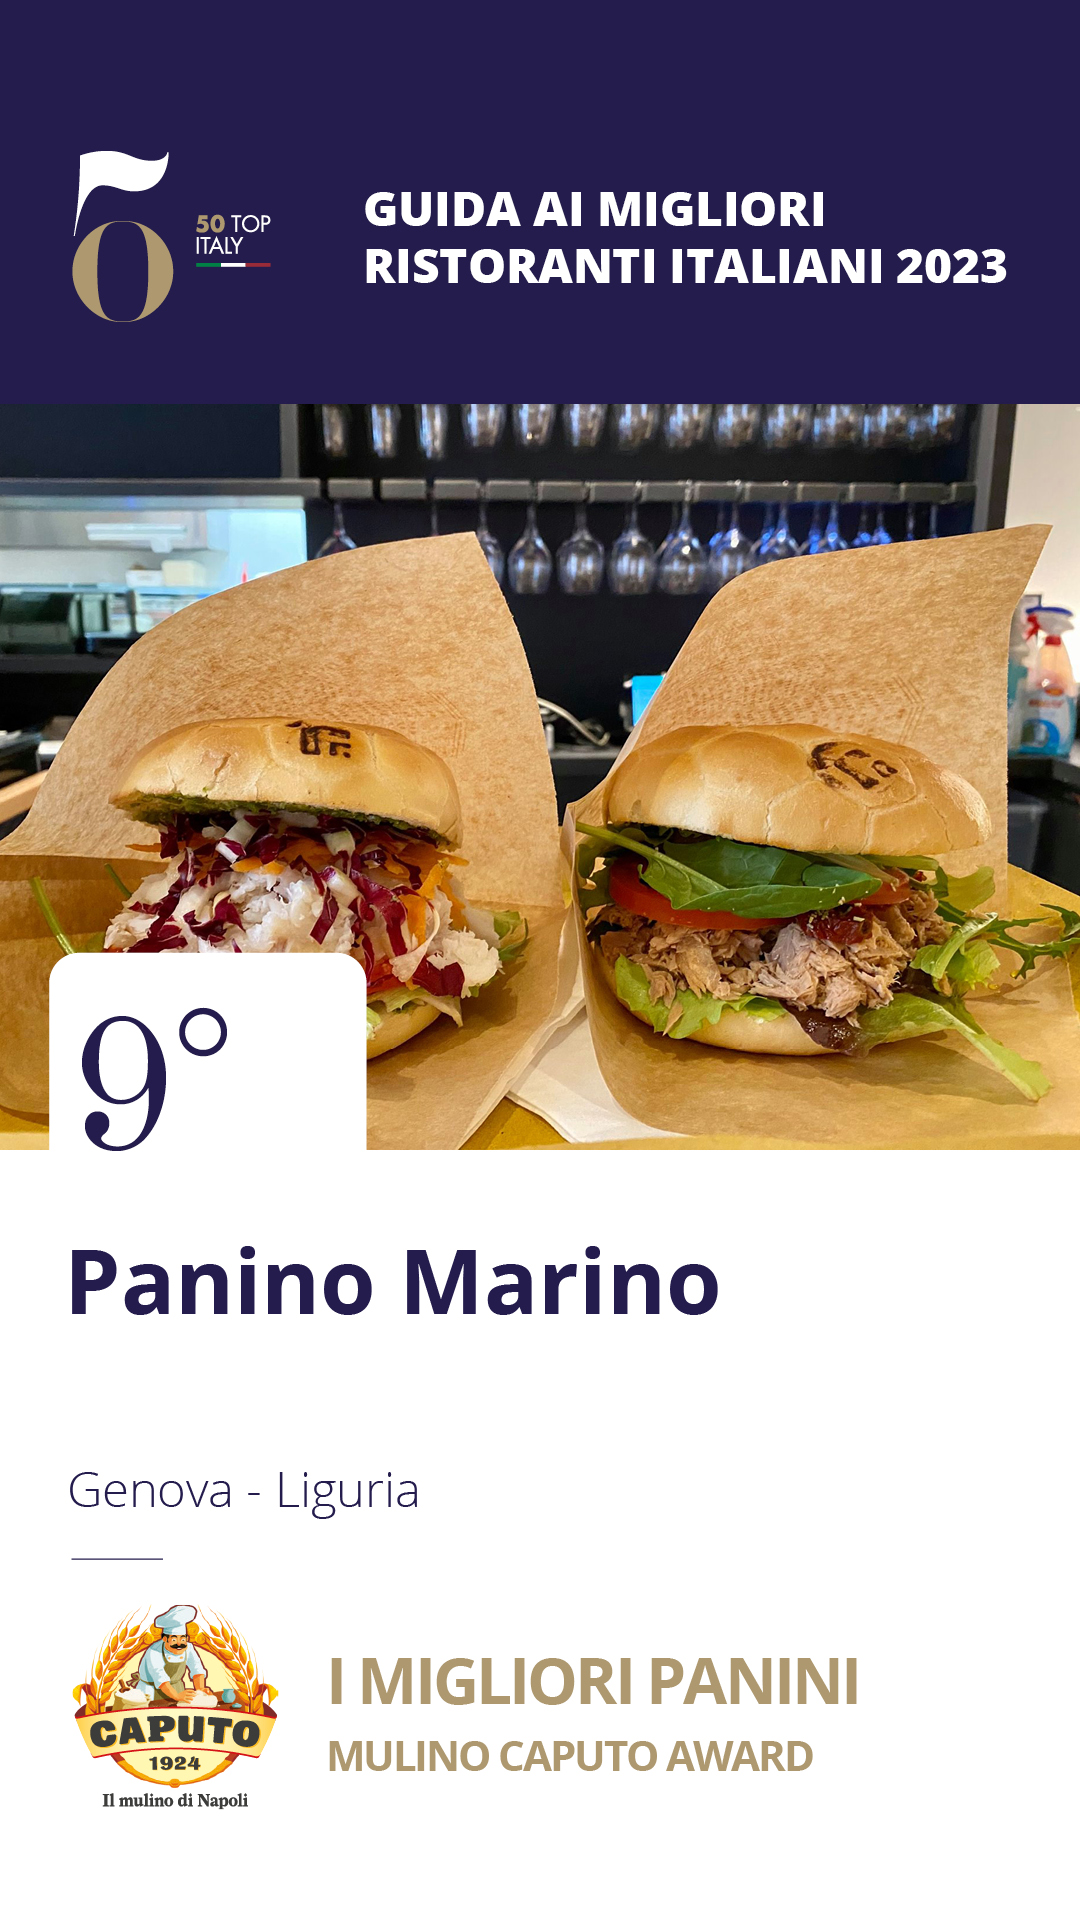 9 - Panino Marino - Genova, Liguria